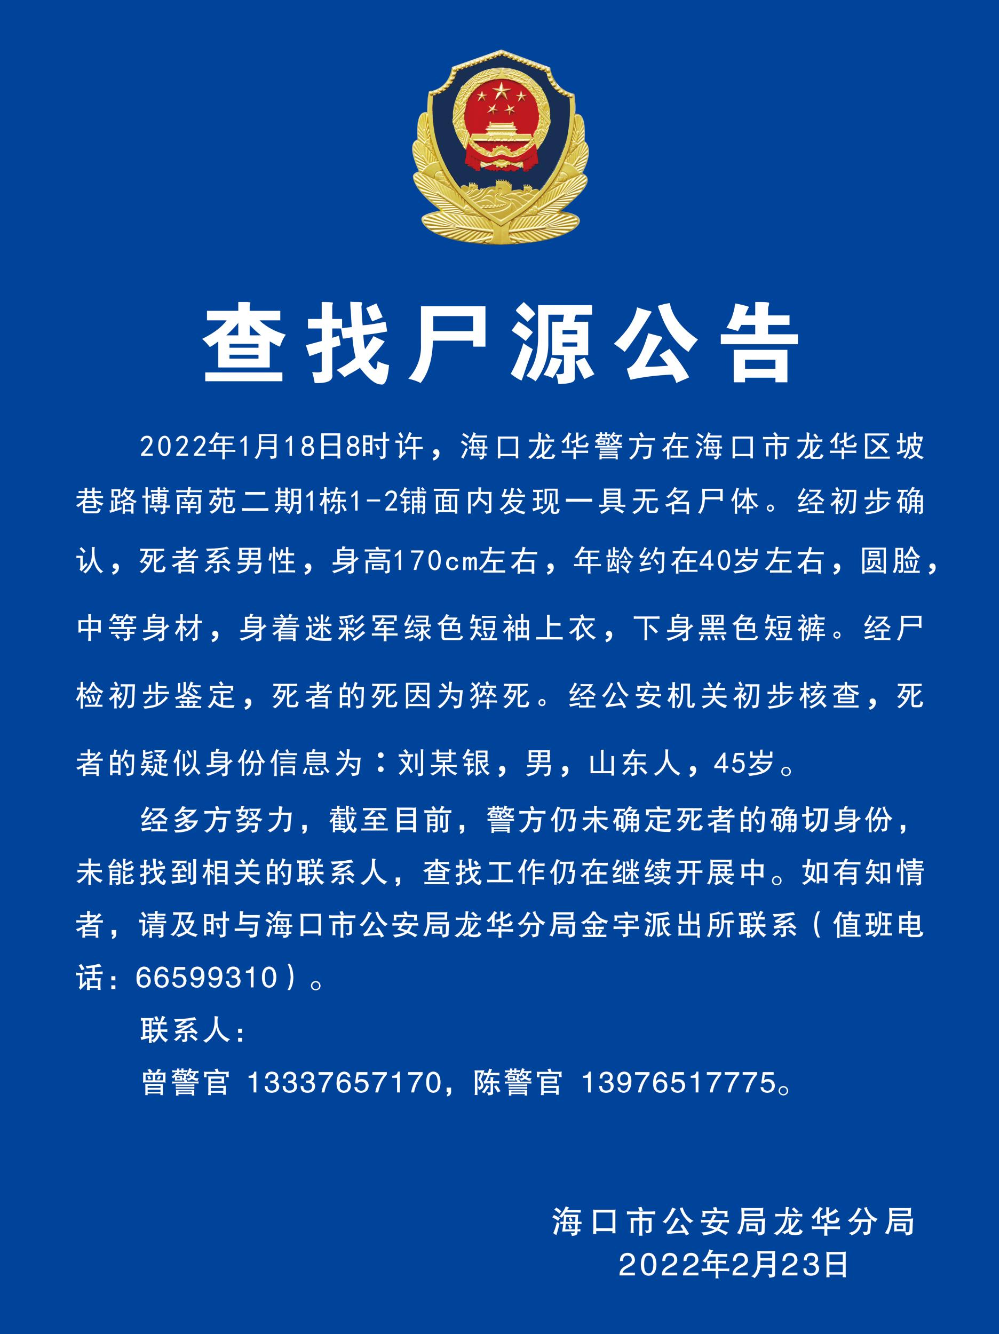 在深圳龙华区寻找专业辩护律师的全面指南  第3张